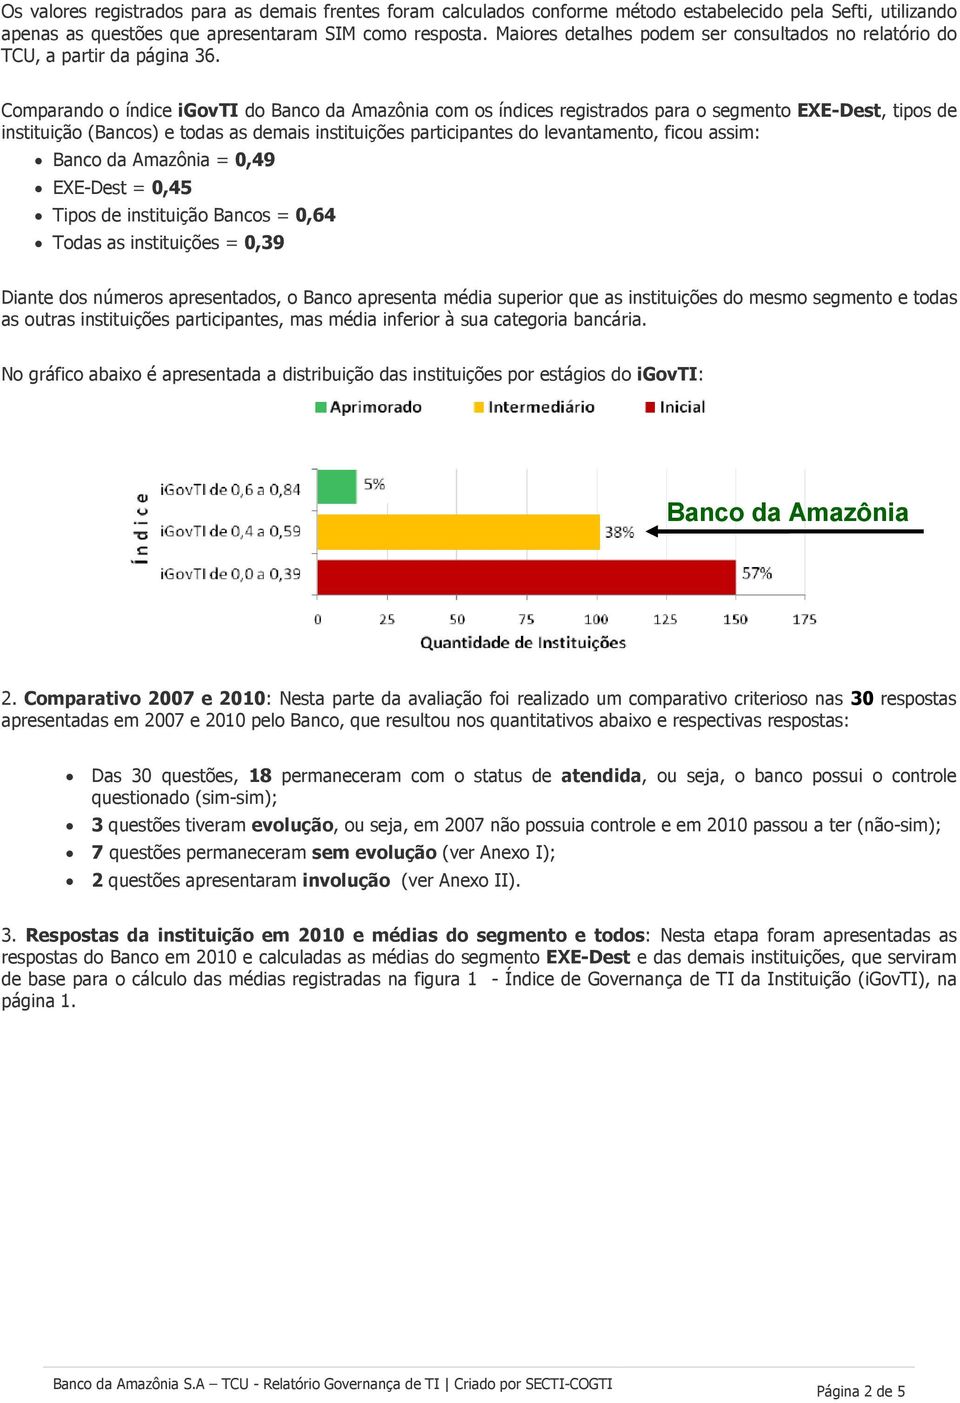 Comparando o índice igovti do Banco da Amazônia com os índices registrados para o segmento EXE-Dest, tipos de instituição (Bancos) e todas as demais instituições participantes do levantamento, ficou